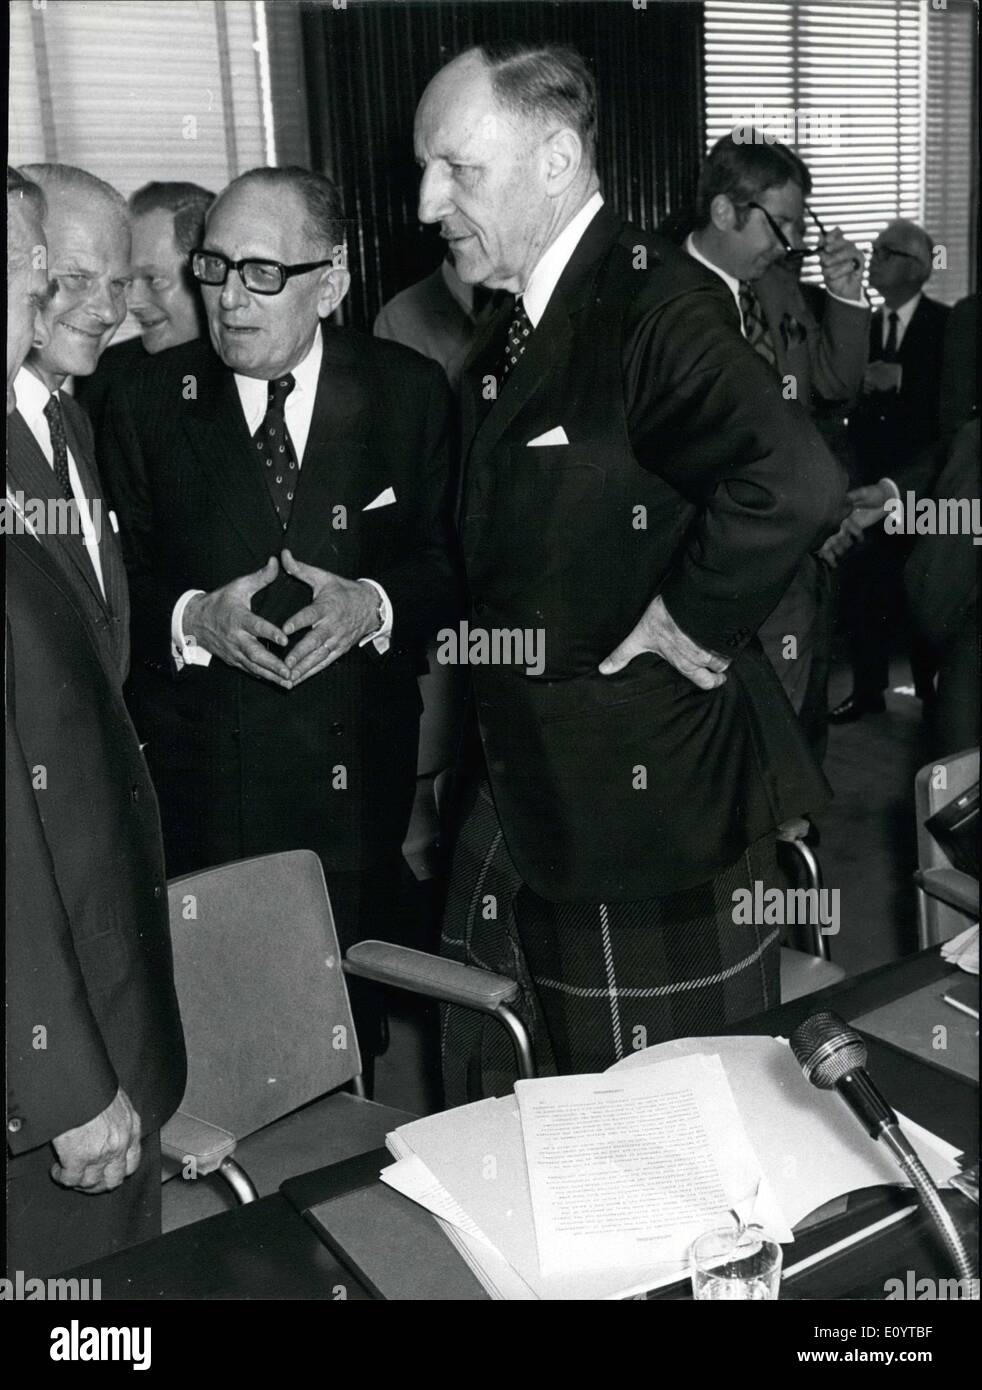 11 mai 1971 - Joseph Luns vêtu d'un kilt des pourparlers avec ses homologues. Maurice Schumann, ministre français des Affaires étrangères est debout près de lui. Il a dit qu'il est porter le kilt pour soutenir l'admission de la Grande-Bretagne dans le marché commun européen. Banque D'Images